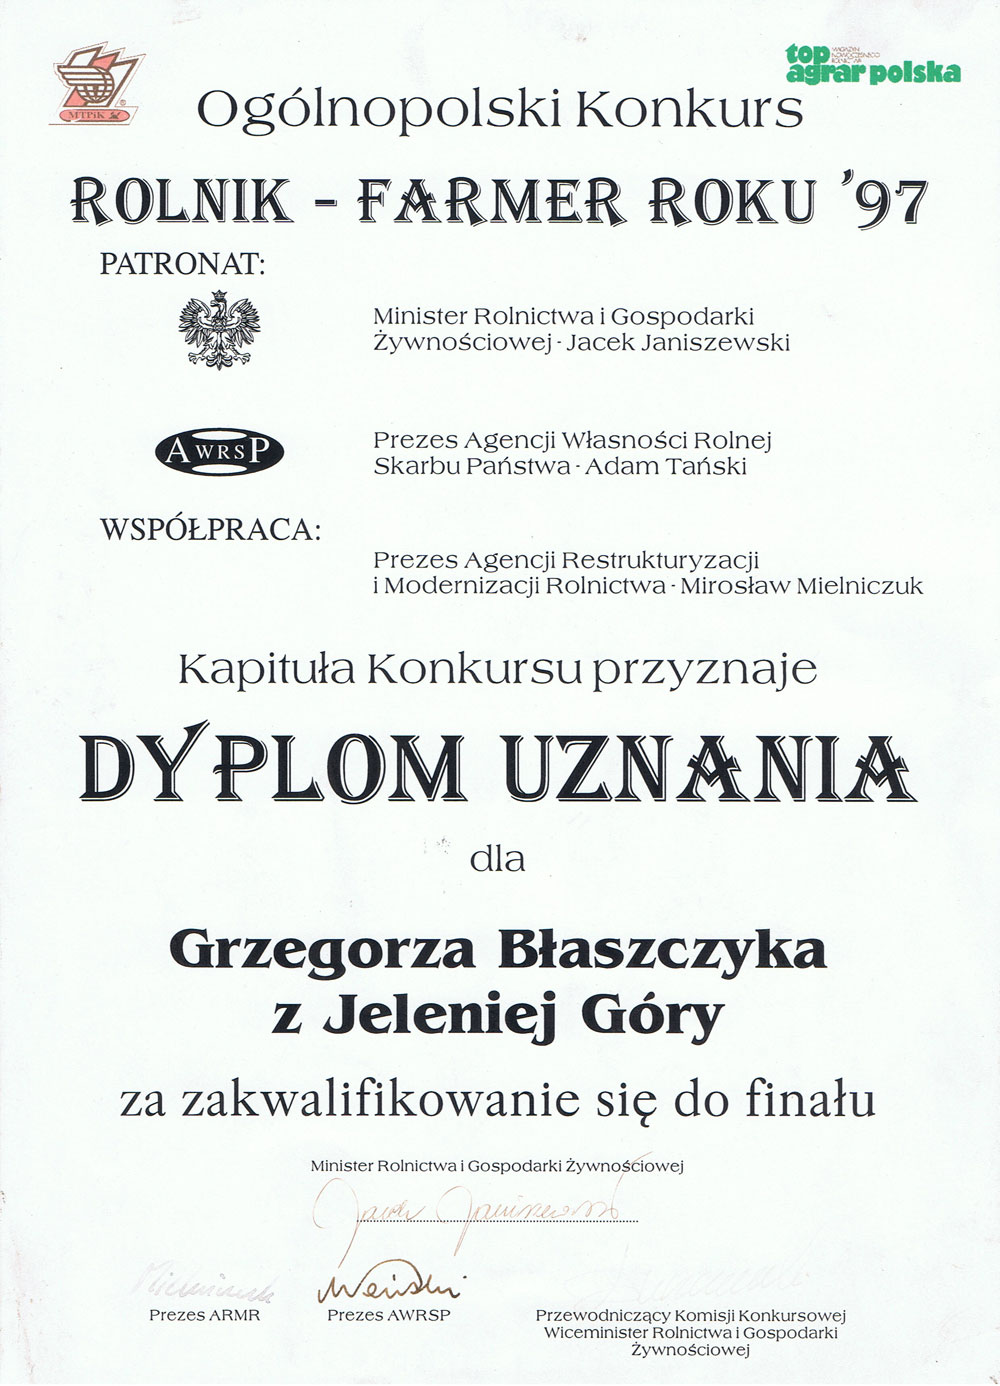 Rolnik - Farmer roku 1997